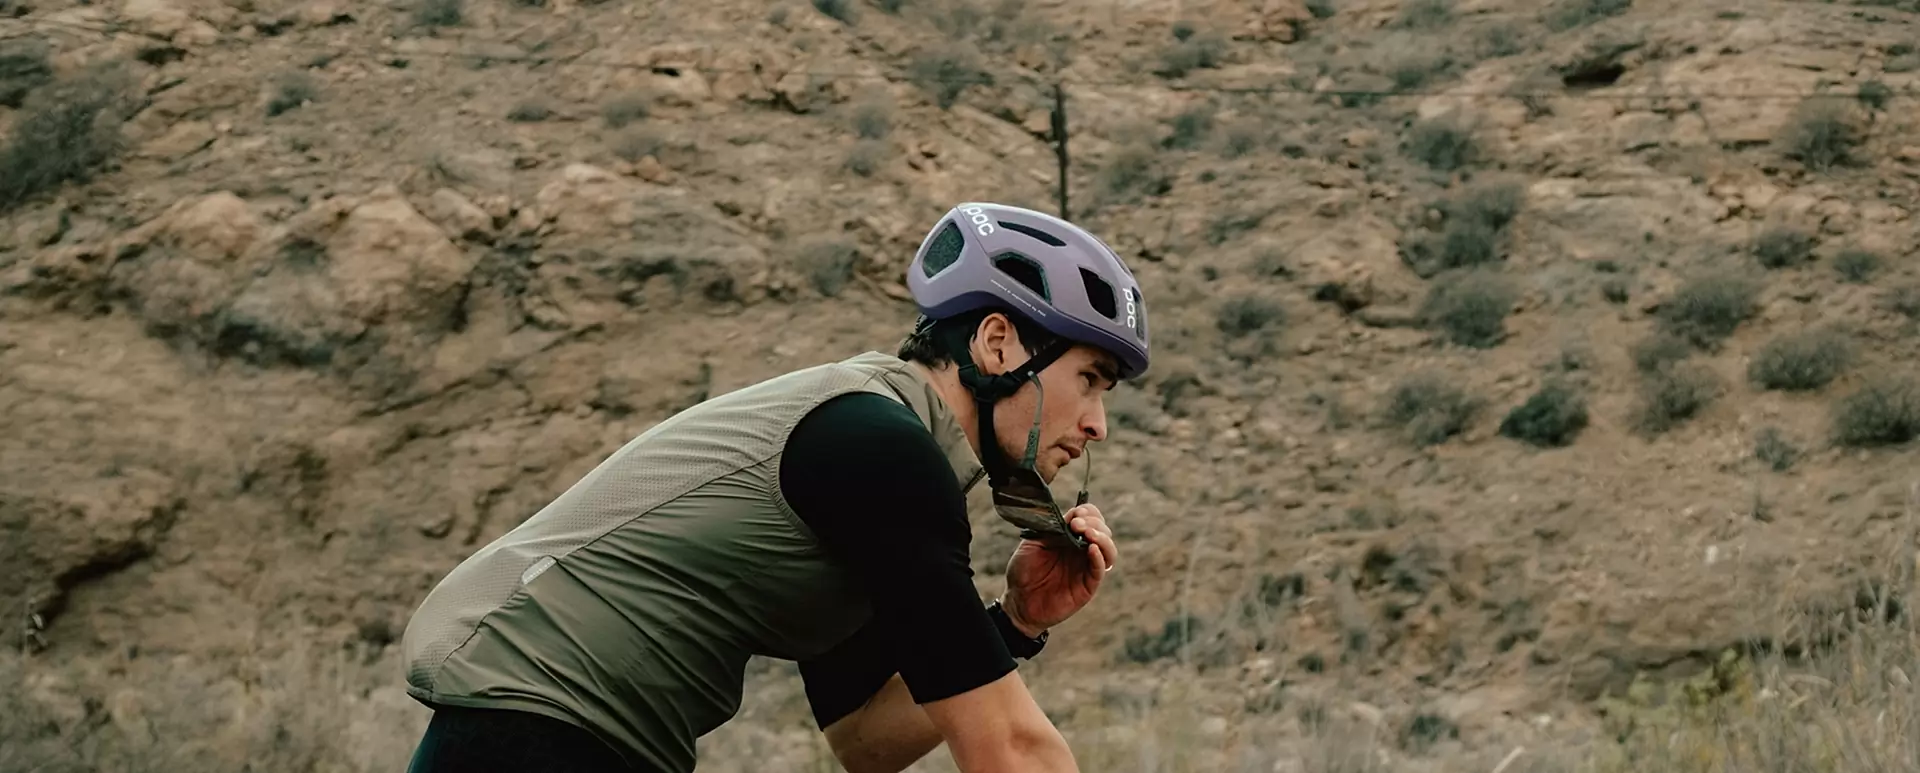 Xc and Road Helmet